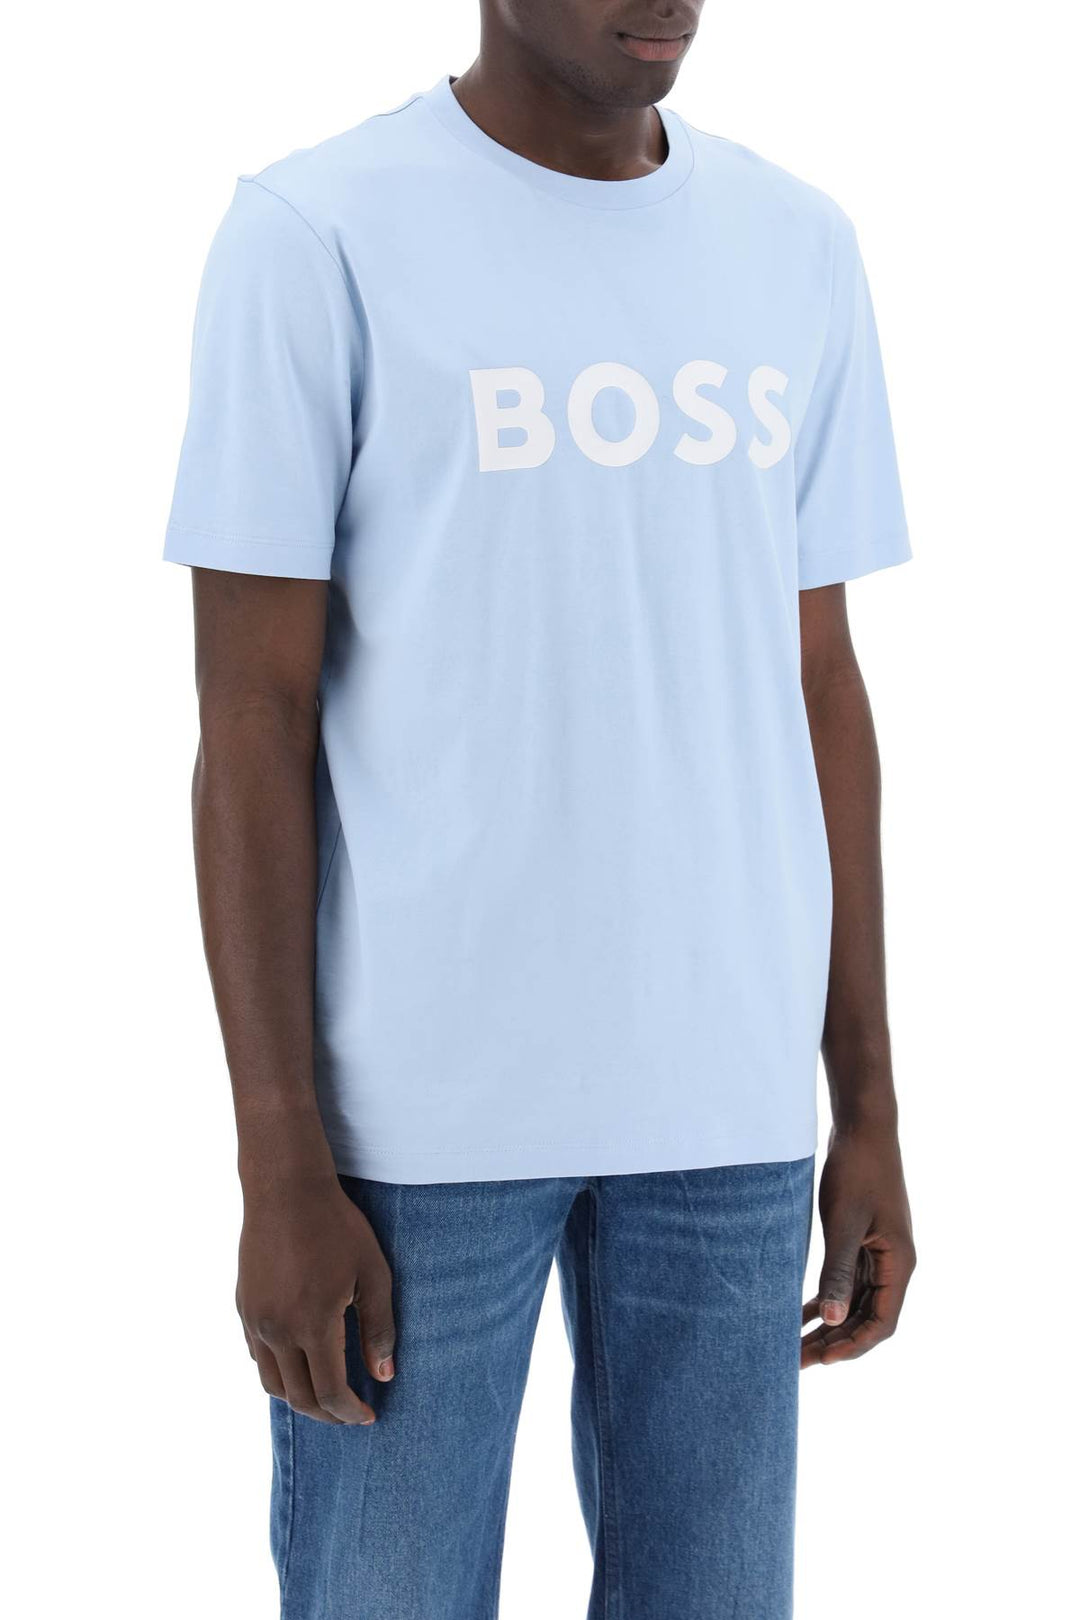 Boss Tiburt 354 Logo Print T Shirt   Light Blue